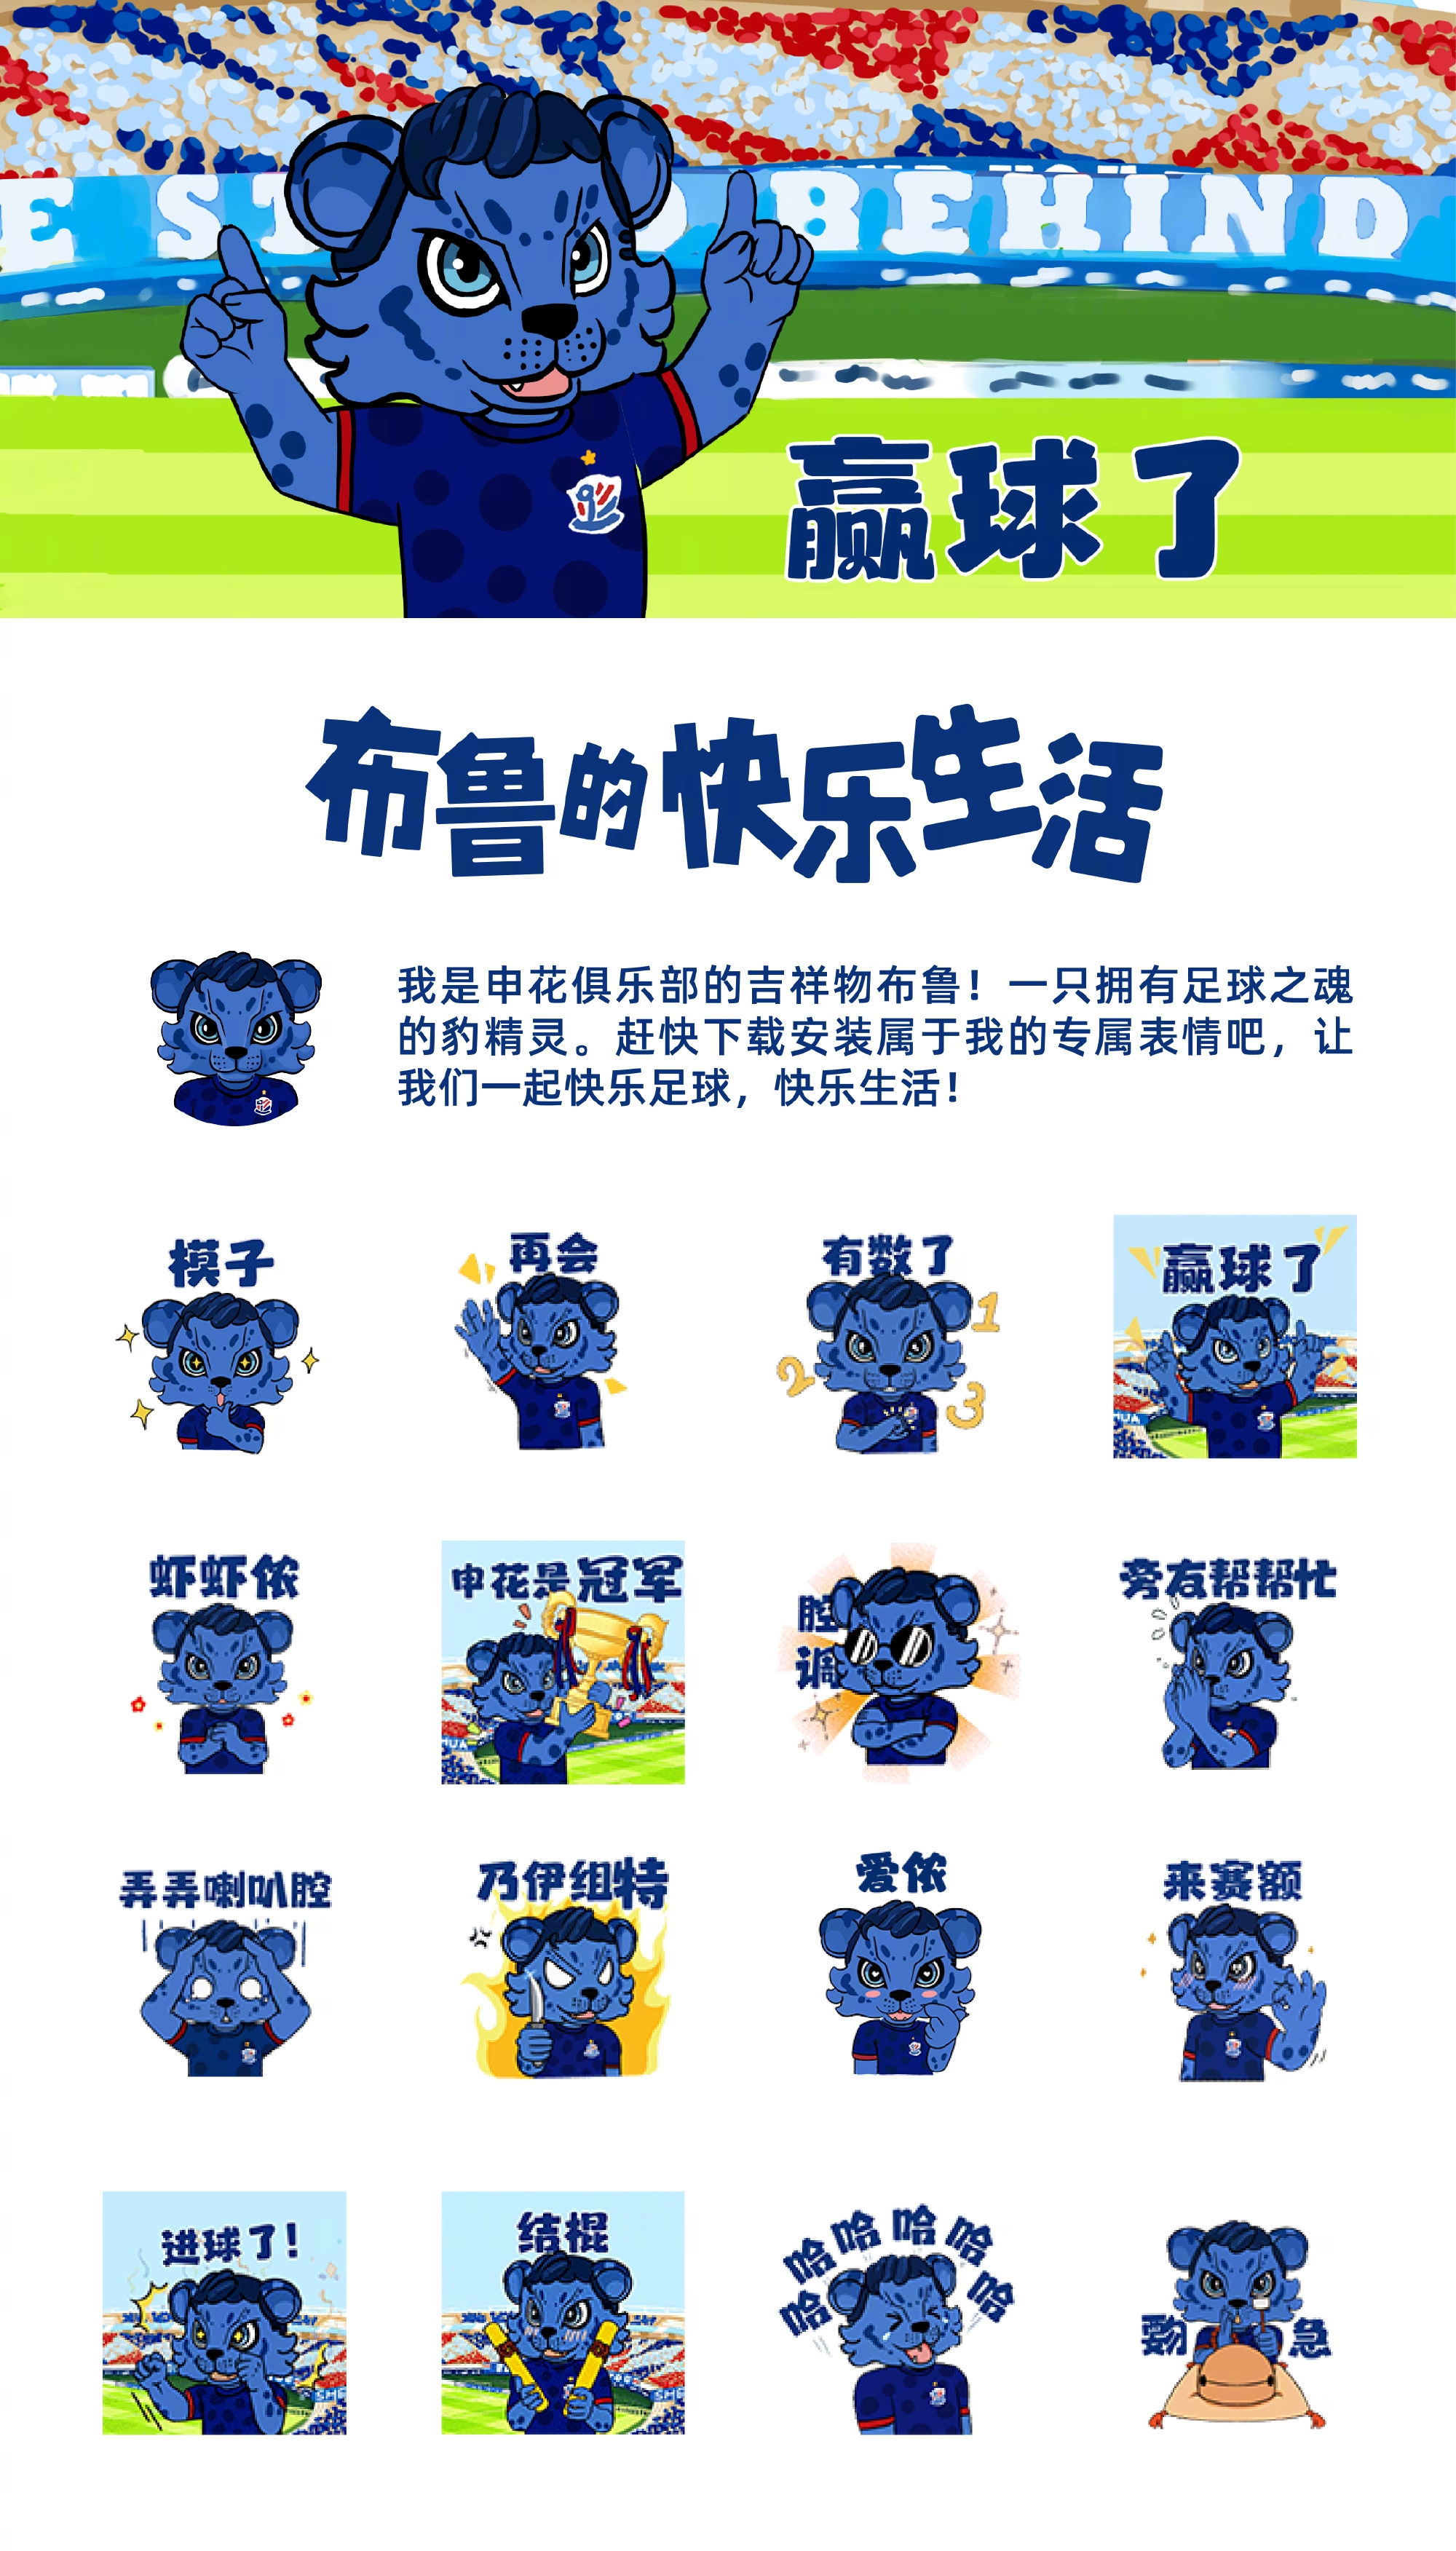 申花俱乐部吉祥物“布鲁”专属表情包 4月29日正式上线！